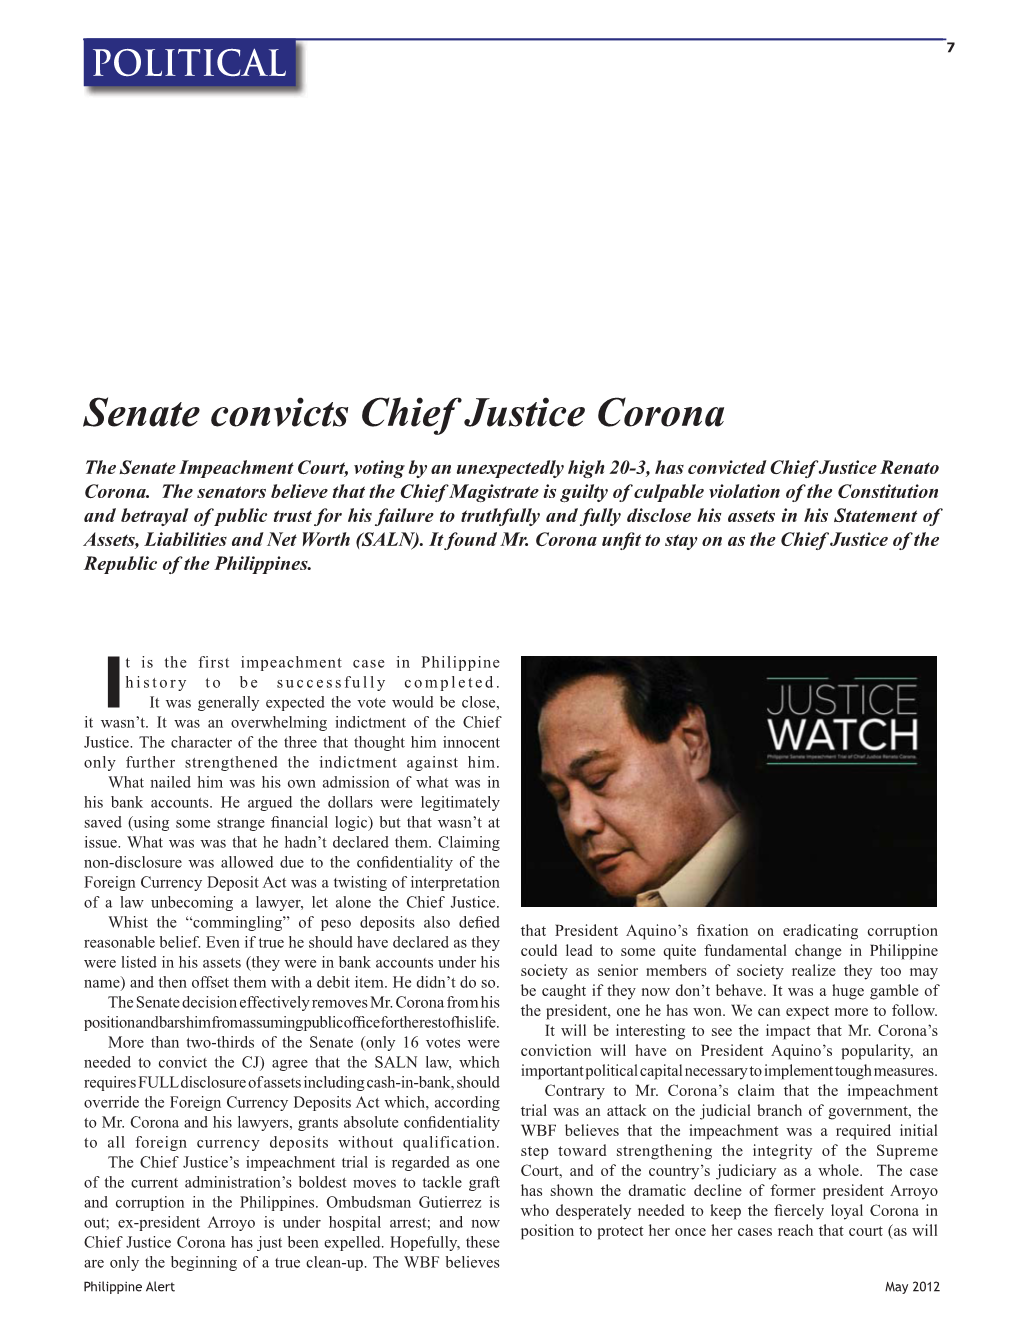 Senate Convicts Chief Justice Corona